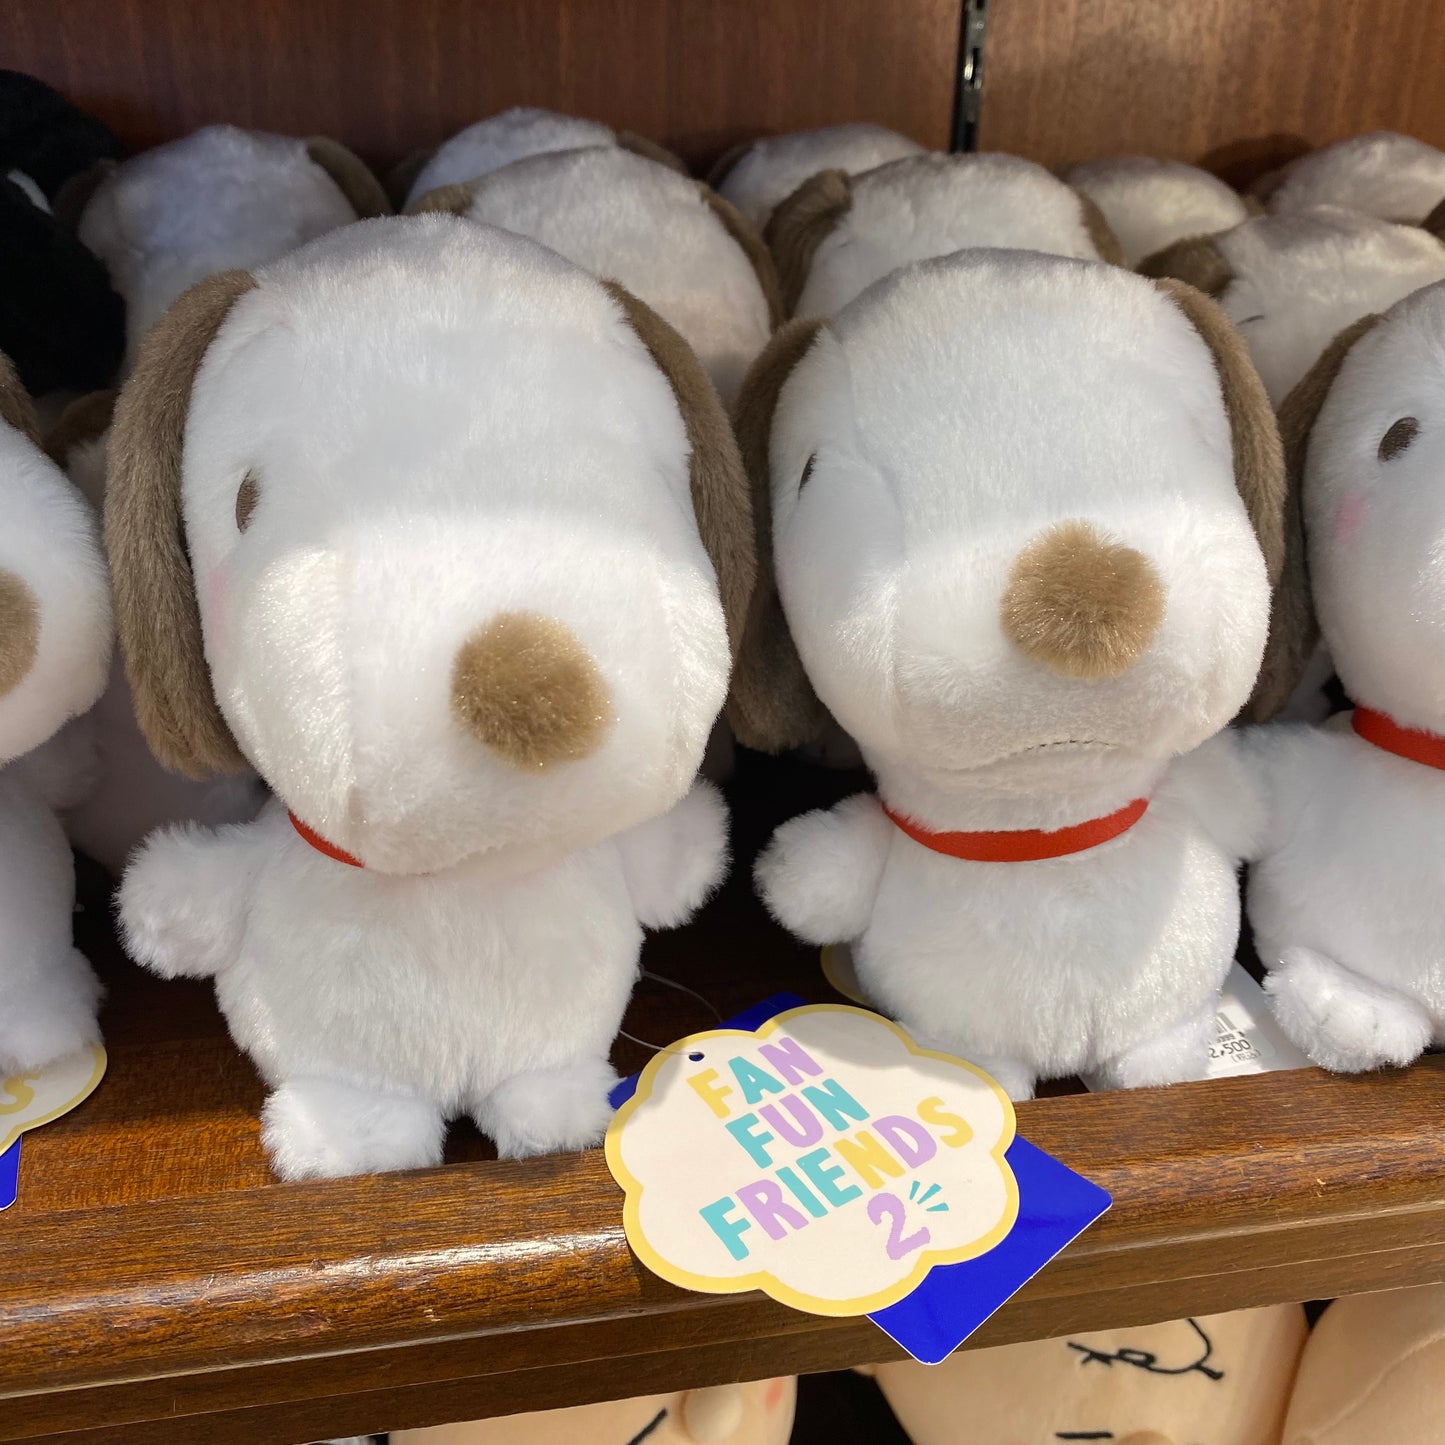 【Order】USJ Fan Fun Friends Series 2 - Snoopy Plush Doll